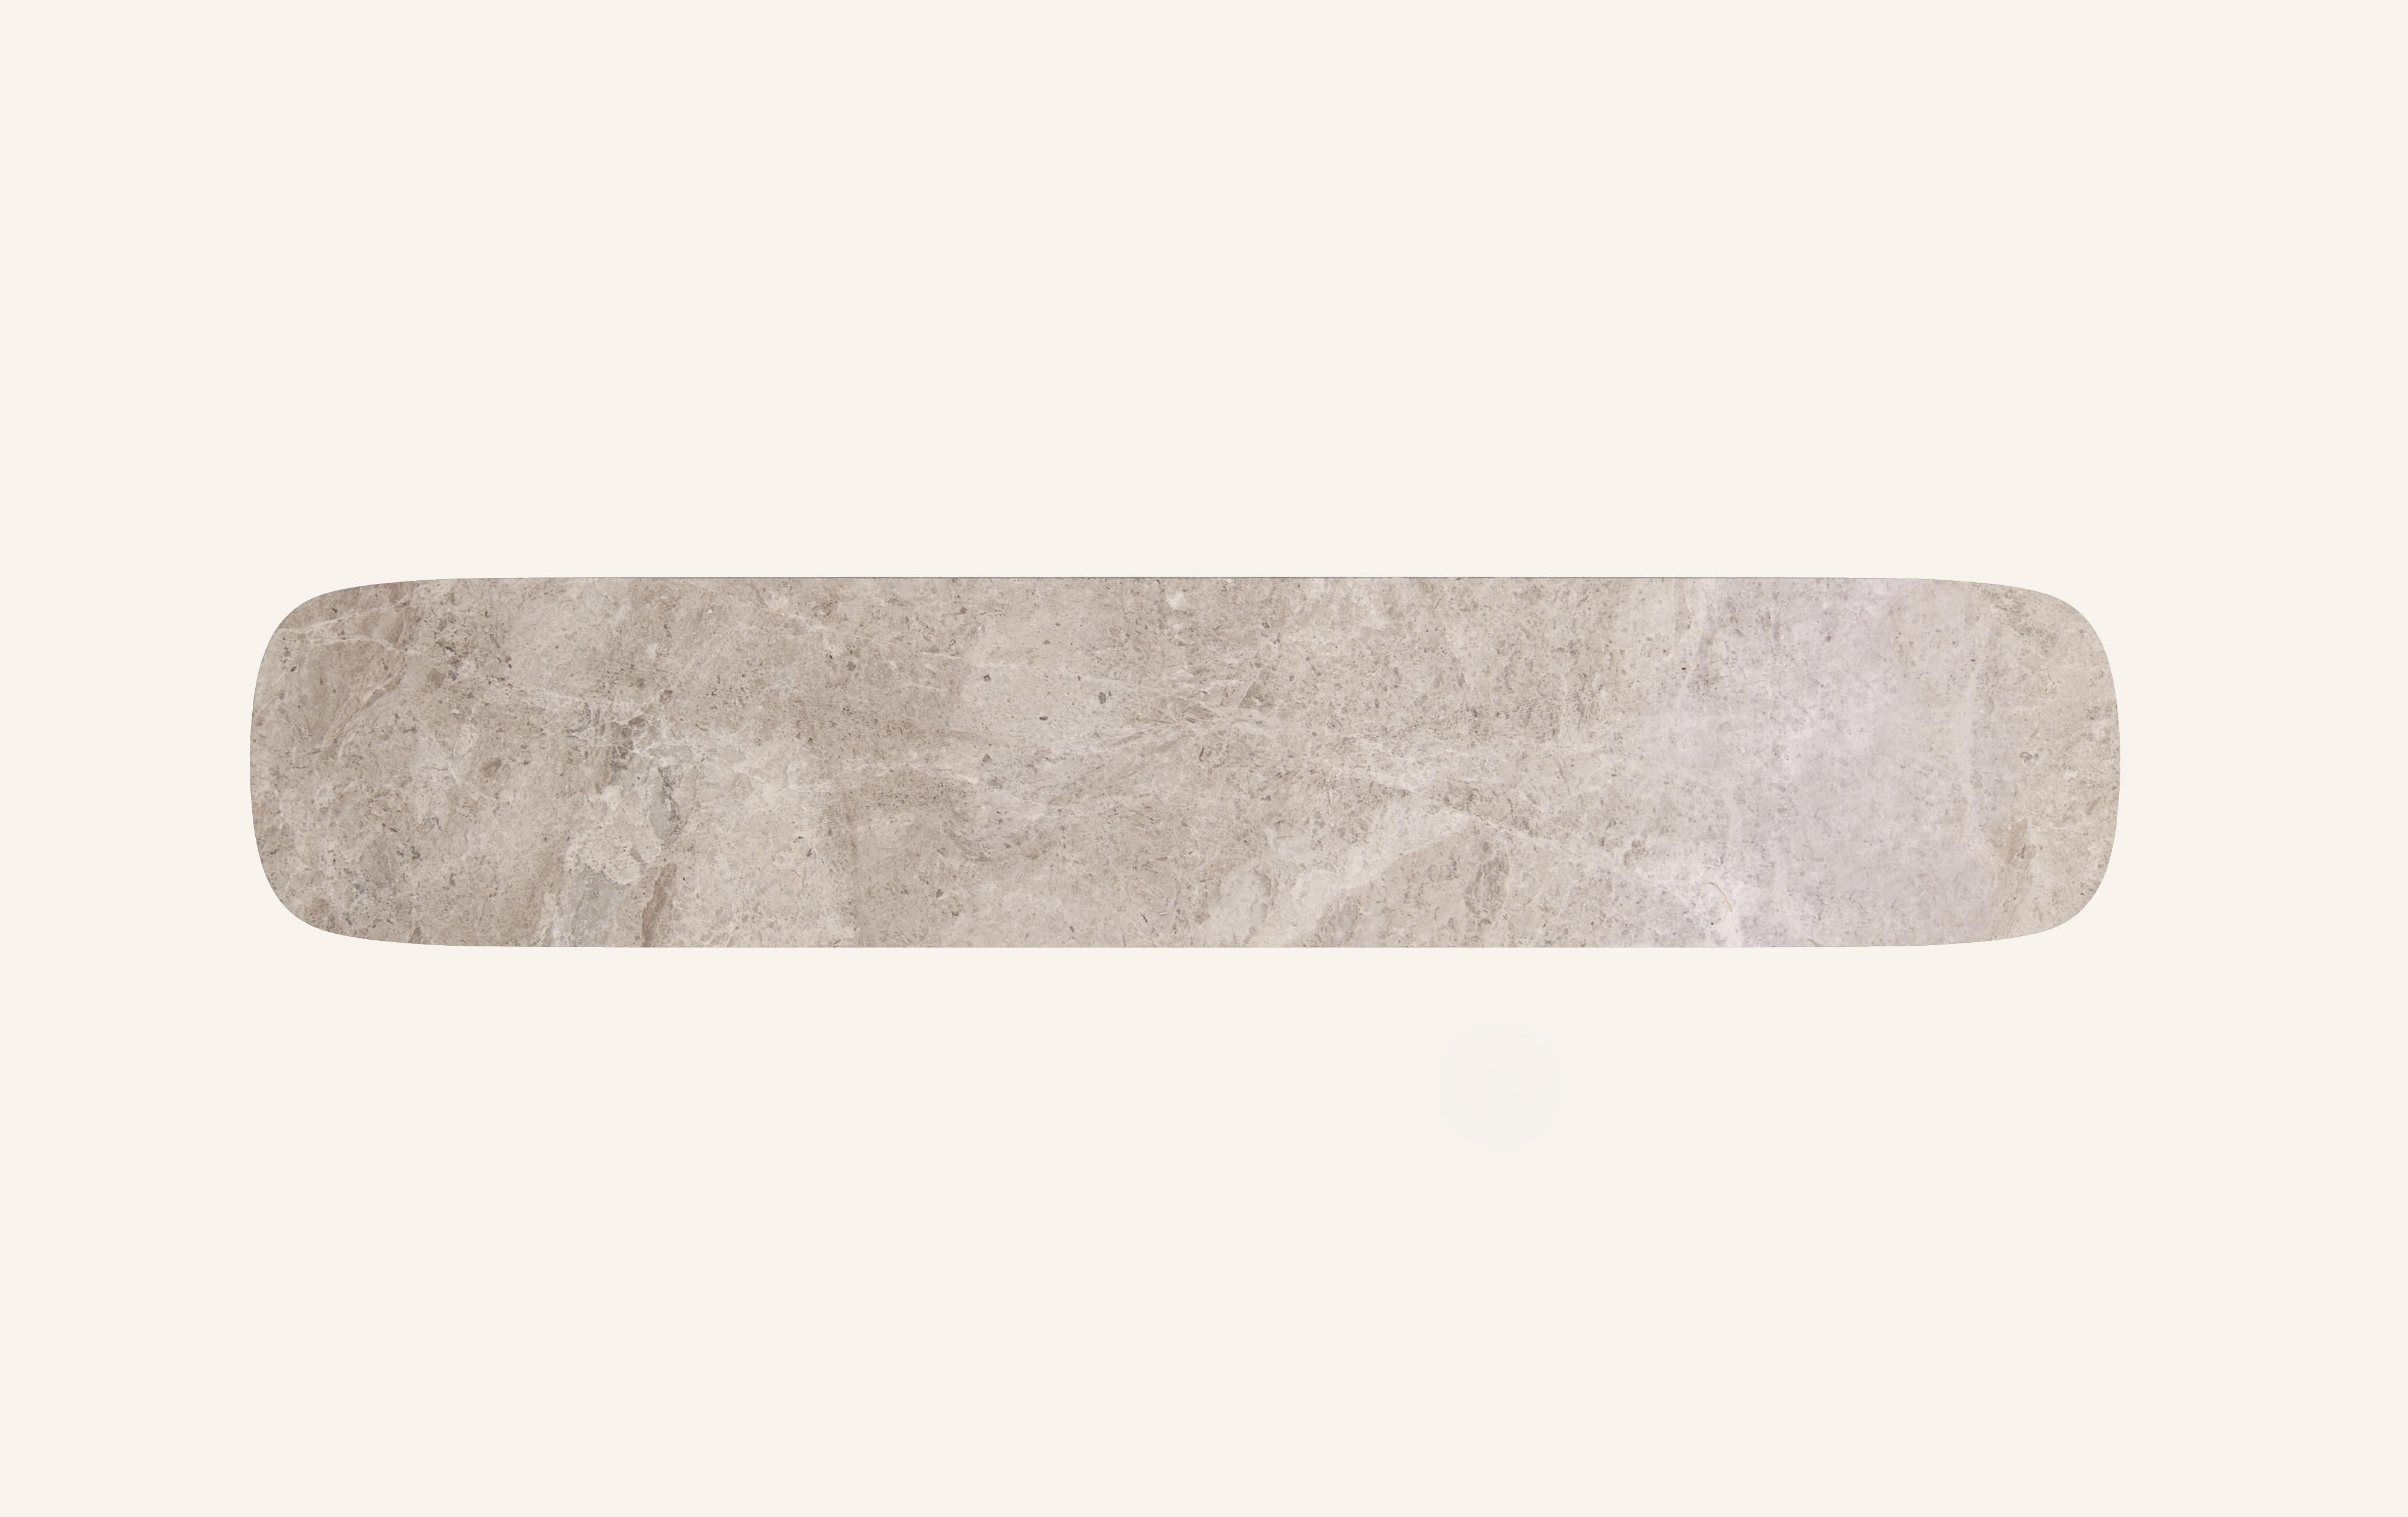 FORM(LA) Cono Console Table 60”L x 15”W x 33”H Tundra Gray Marble In New Condition For Sale In Los Angeles, CA